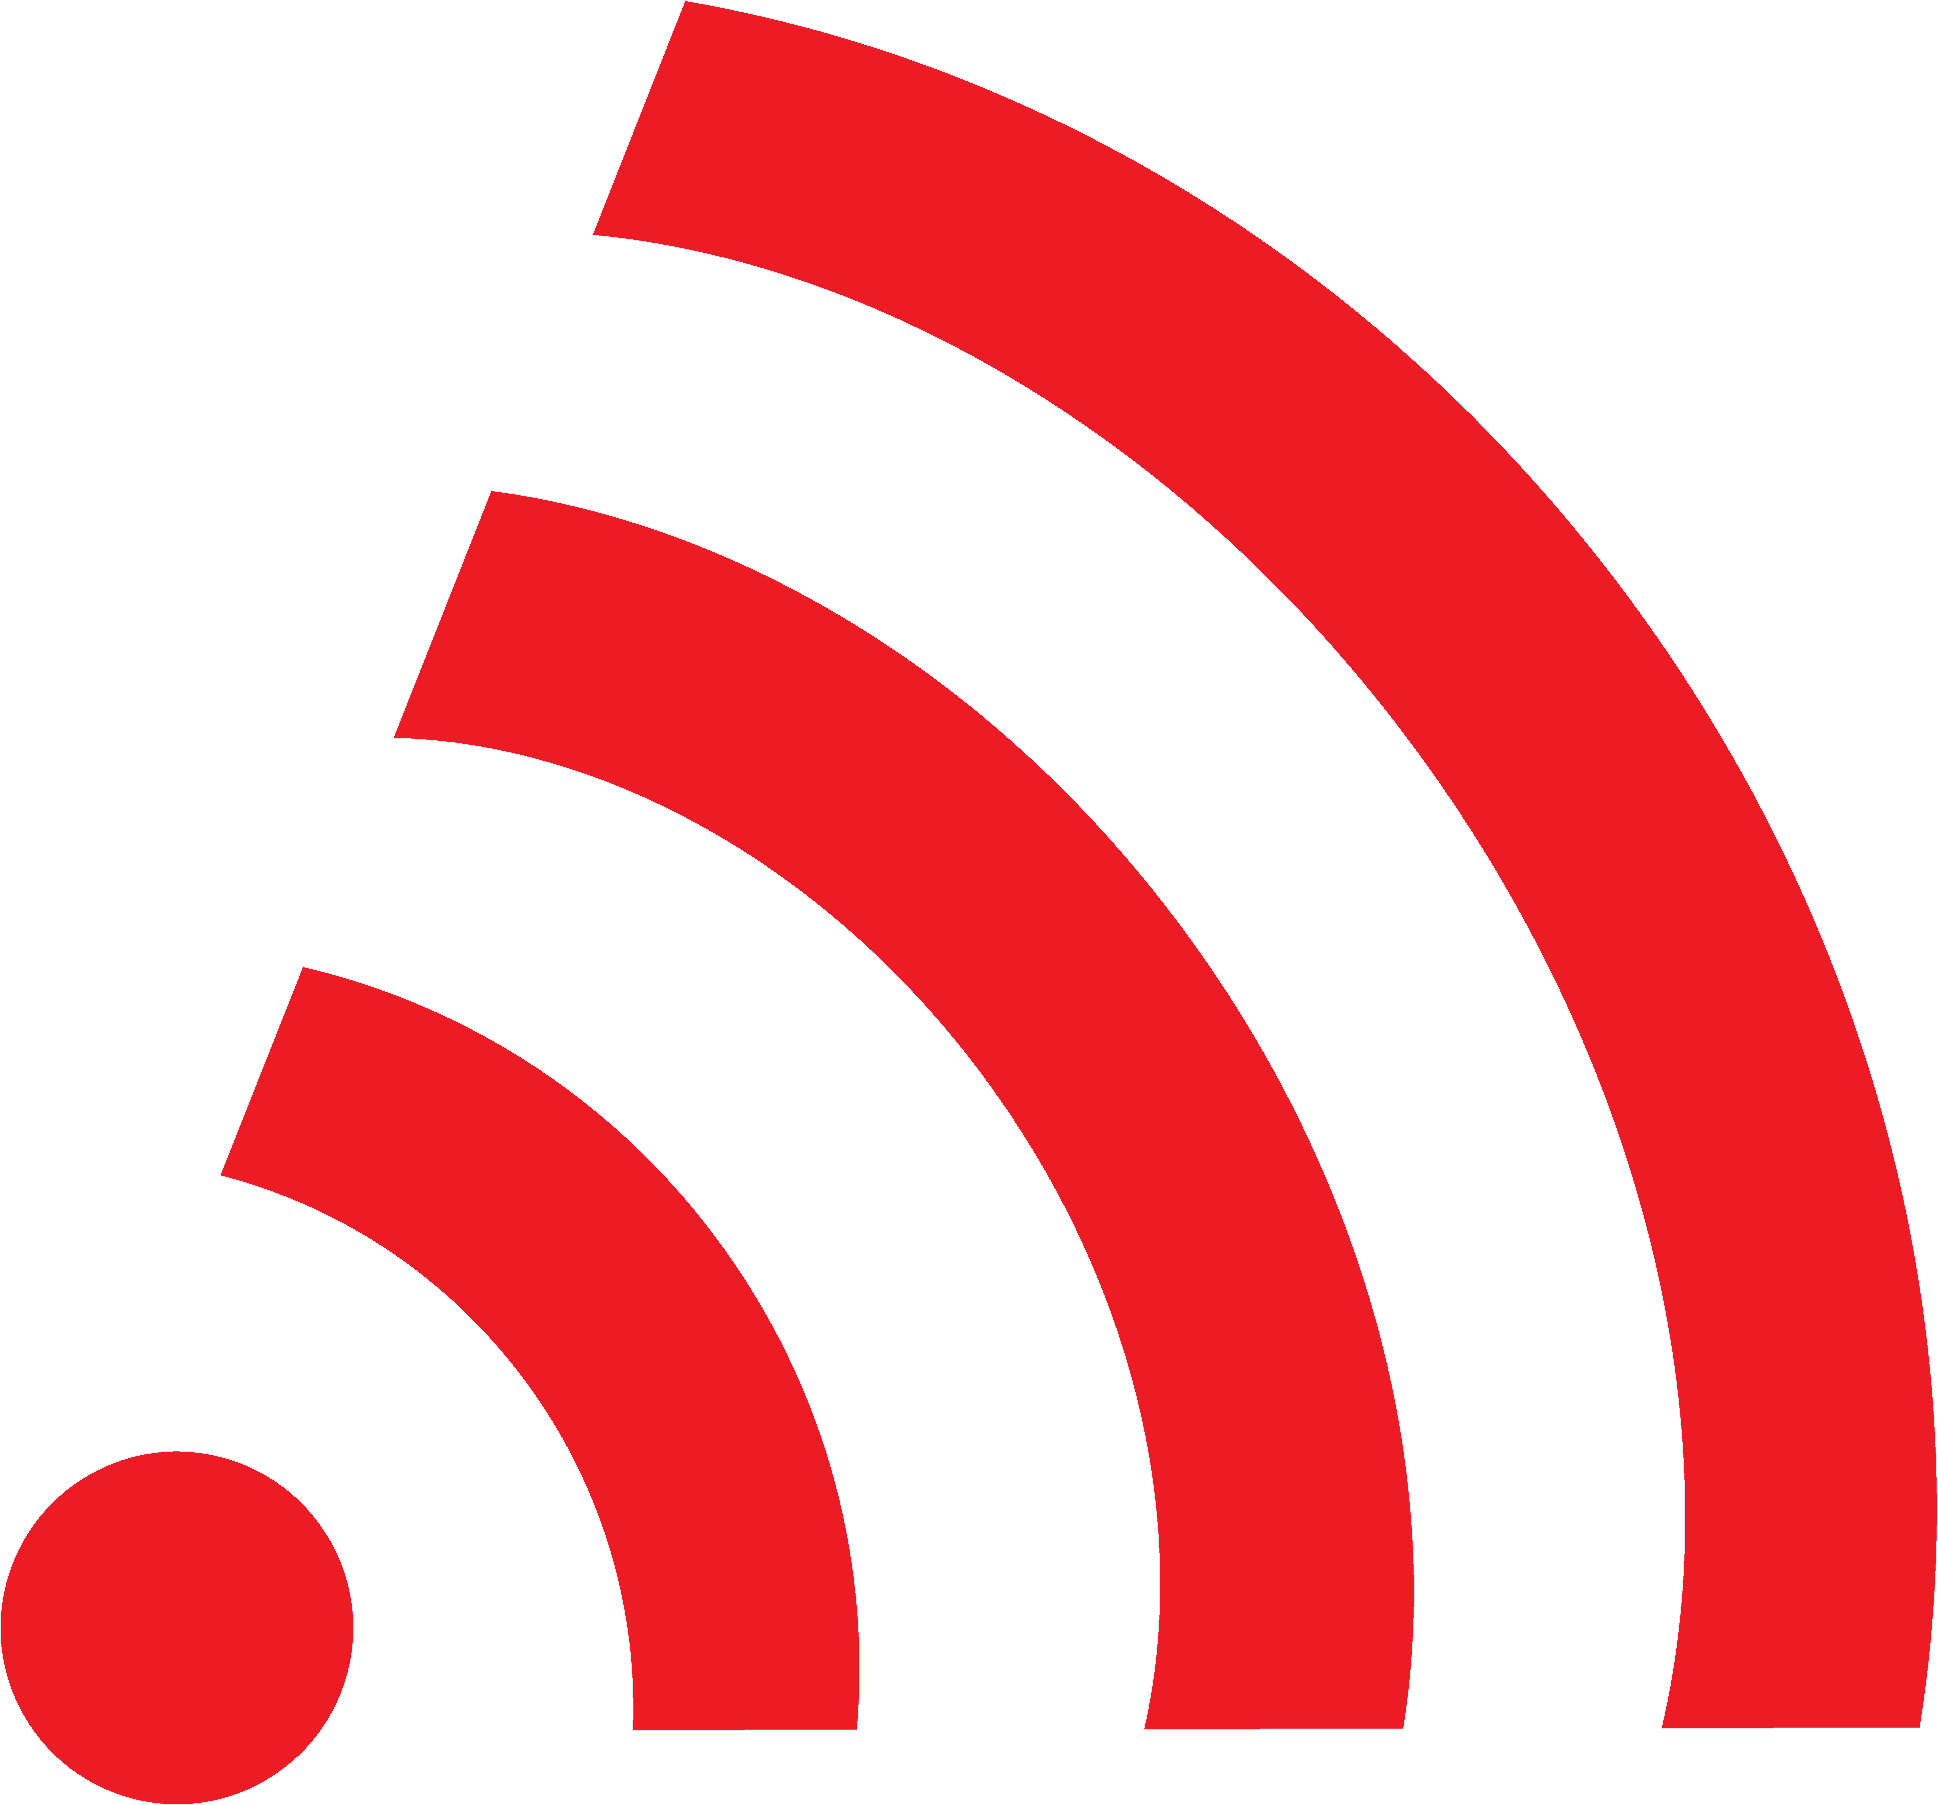 WiFi logo PNG